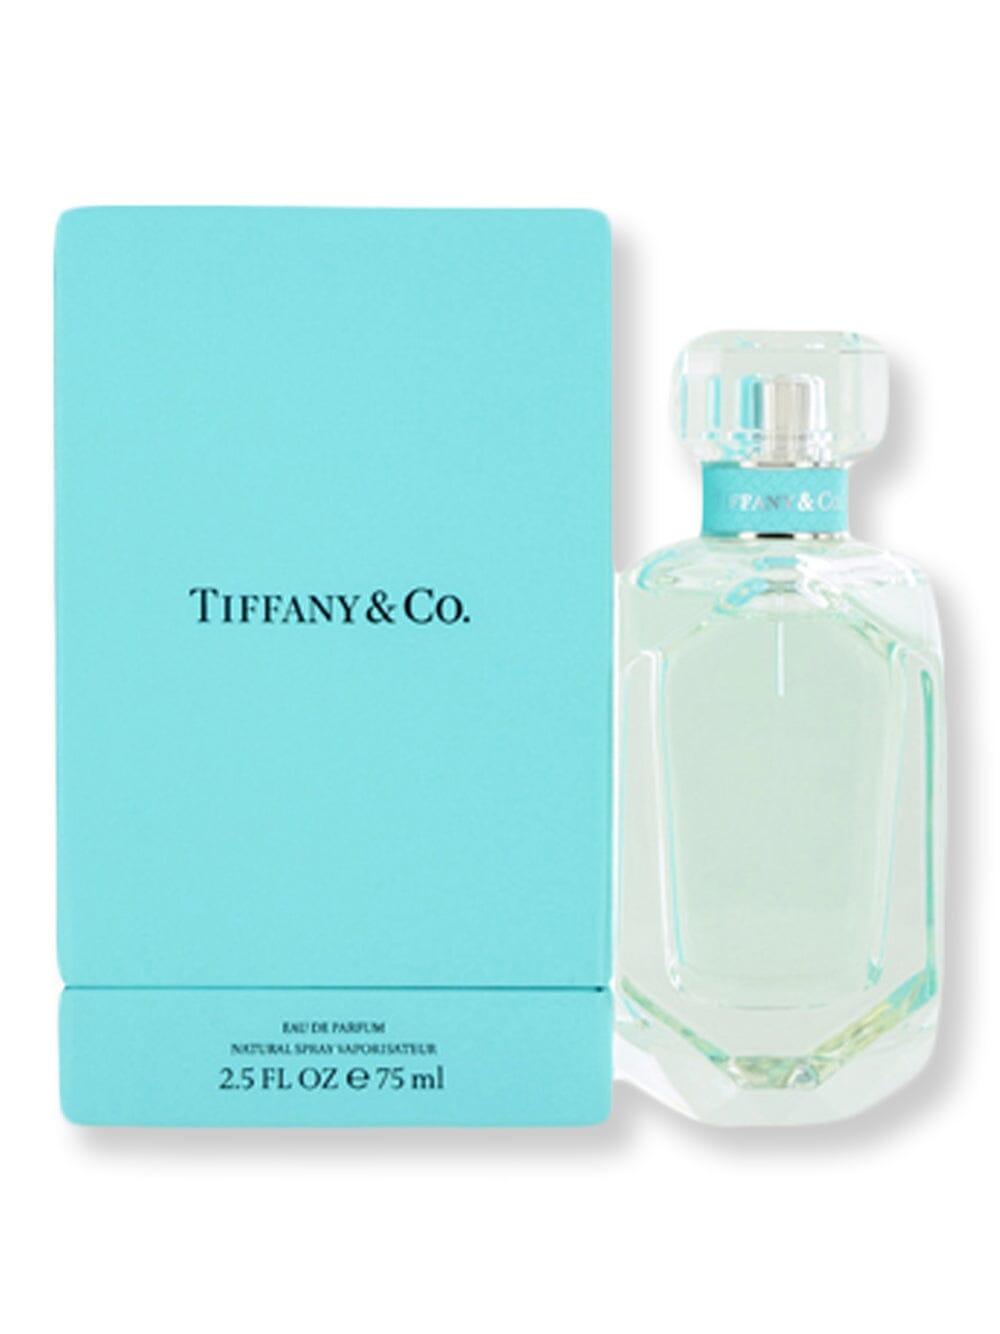 Tiffany & Co Tiffany & Co EDP Spray 2.5 oz75 ml Perfume 